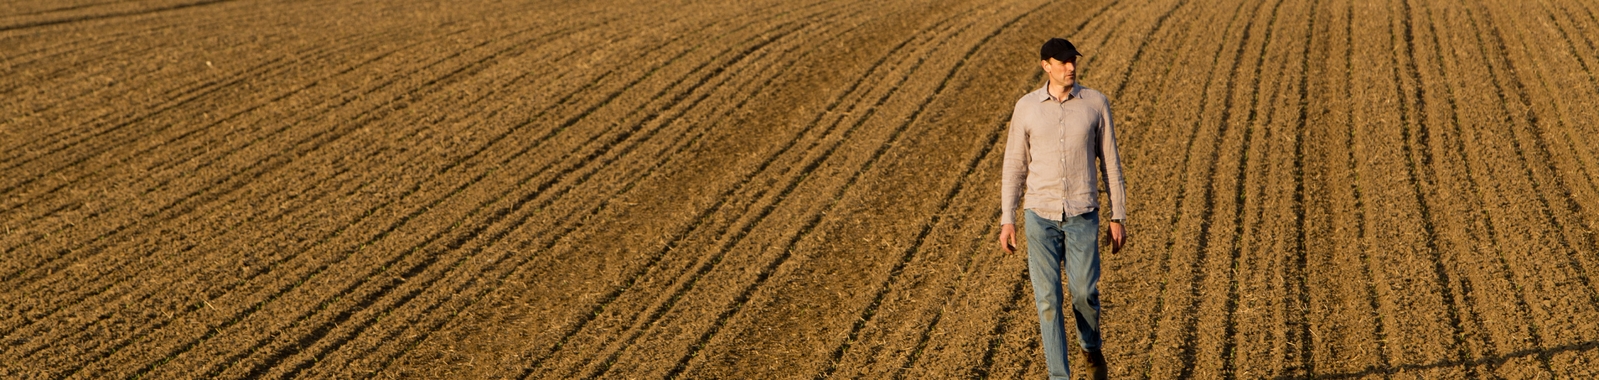 Un agriculteur marche dans un champ